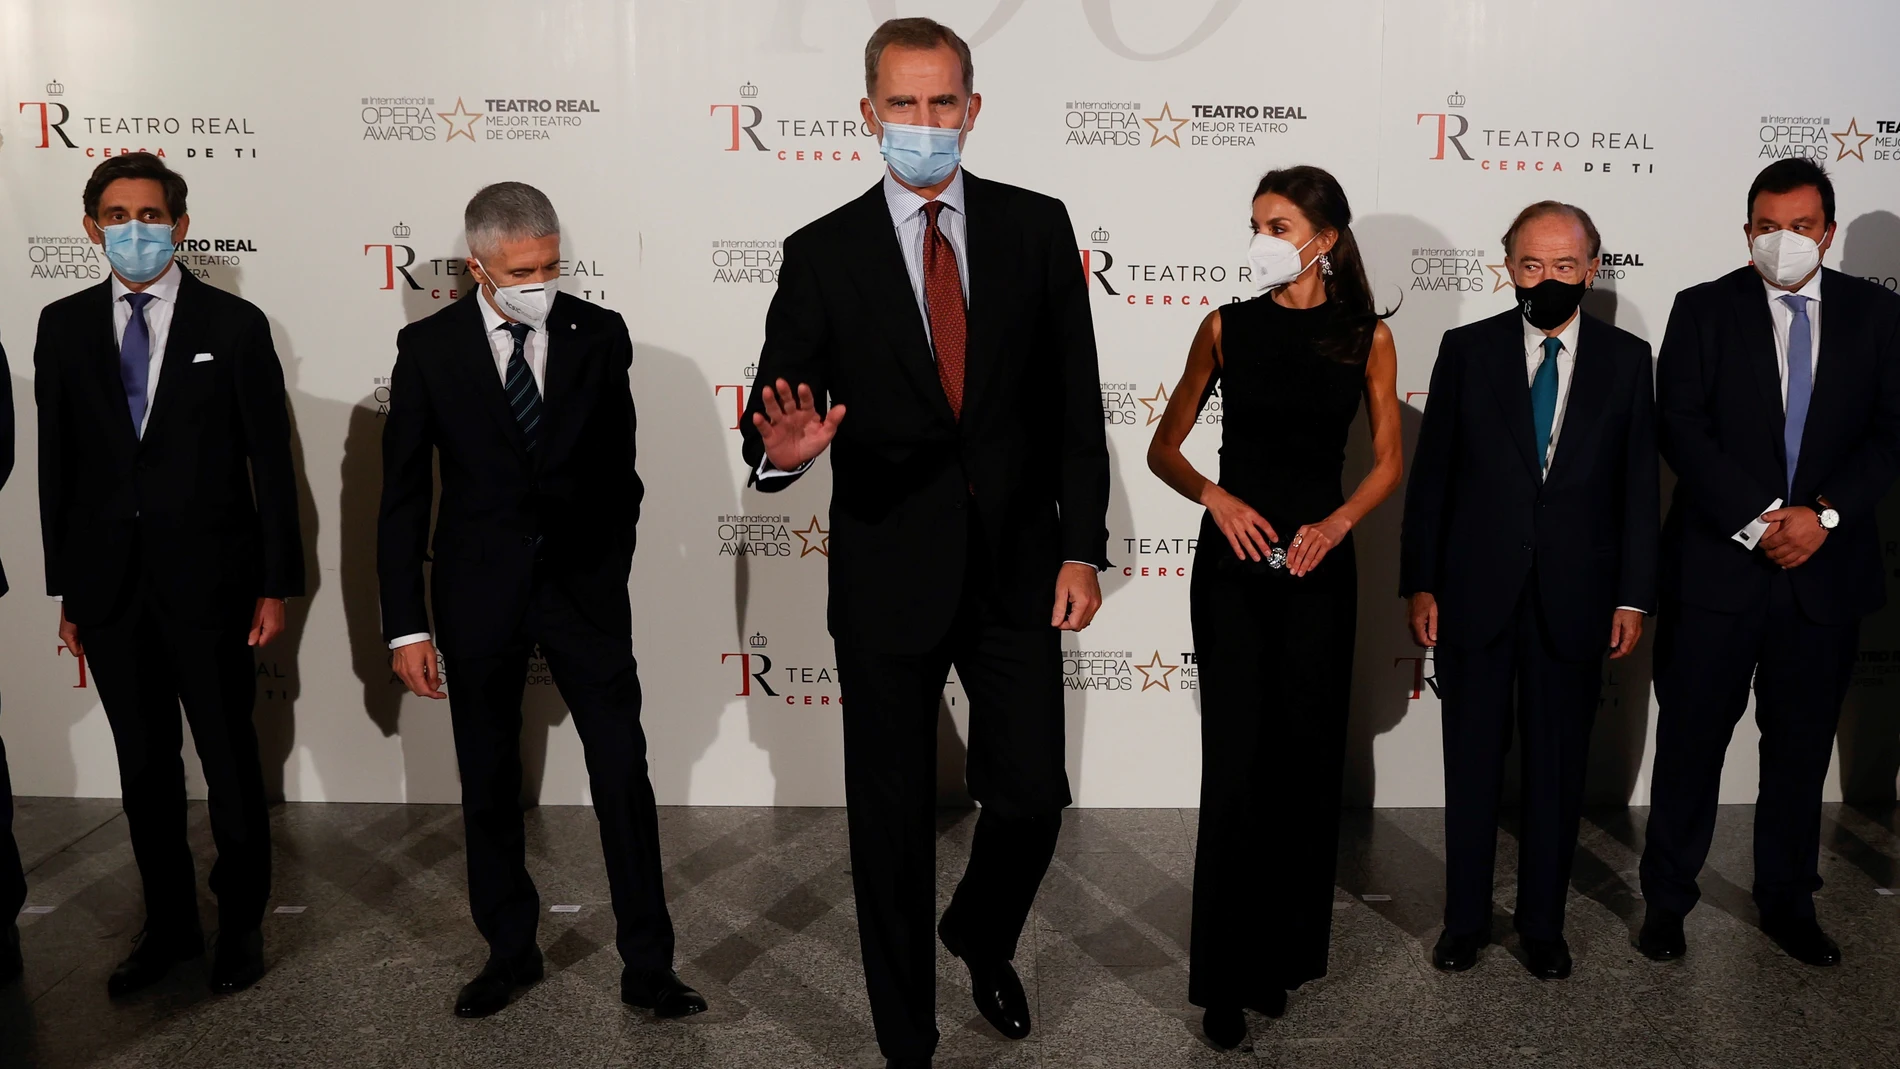 Los Reyes junto al ministro del Interior, Fernando Grande Marlaska (2i), y el presidente del Patronato del Teatro Real, Gregorio Marañón (2d), entre otros, ayer en el Teatro Real de Madrid